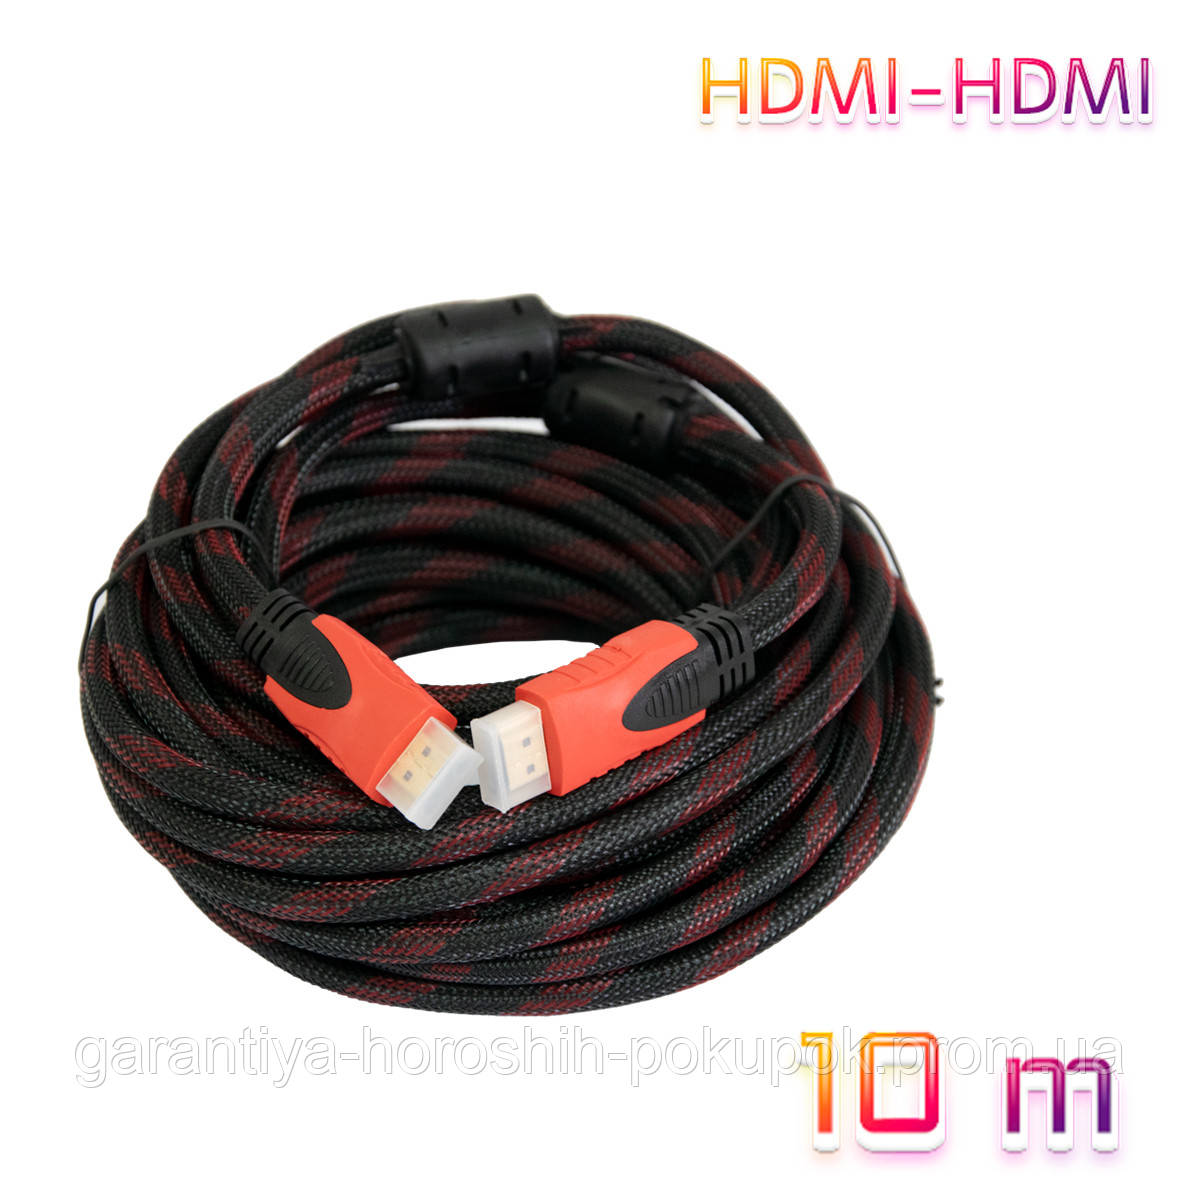 Penge gummi eksplicit ikke noget Кабель-удлинитель HDMI-HDMI 10 Метров, HDMI Кабель для Монитора и  Телевизора, Шнур-удлинитель Ашдимиай (GA) — в Категории "кабели для  Электроники" на Bigl.ua (1738320180)